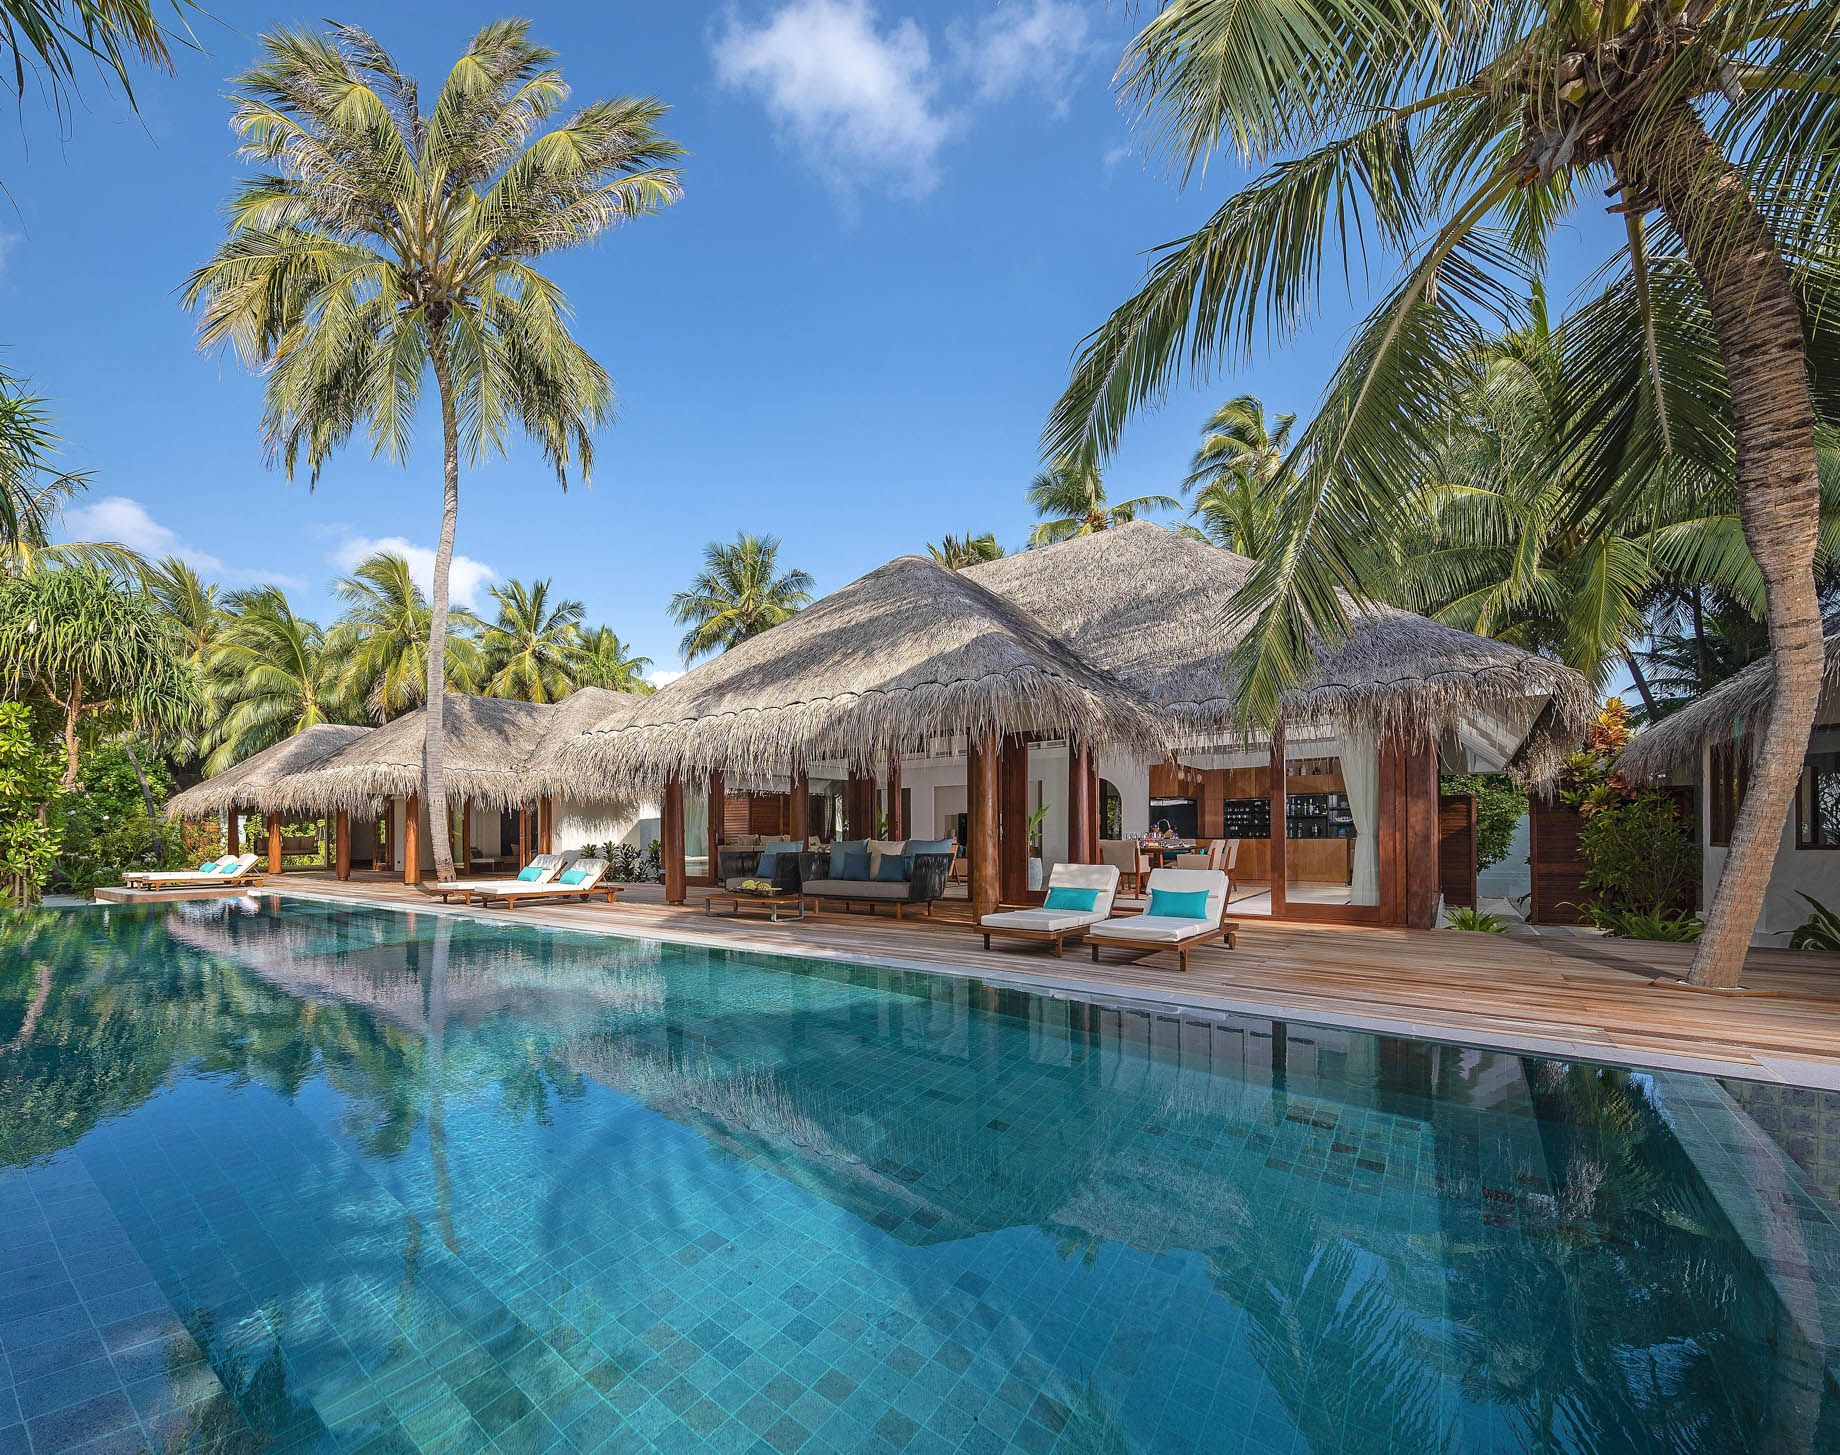 Anantara Kihavah Maldives Villas Resort - Baa Atoll, Maldives - Three Bedroom Beach Pool Residence Exterior View